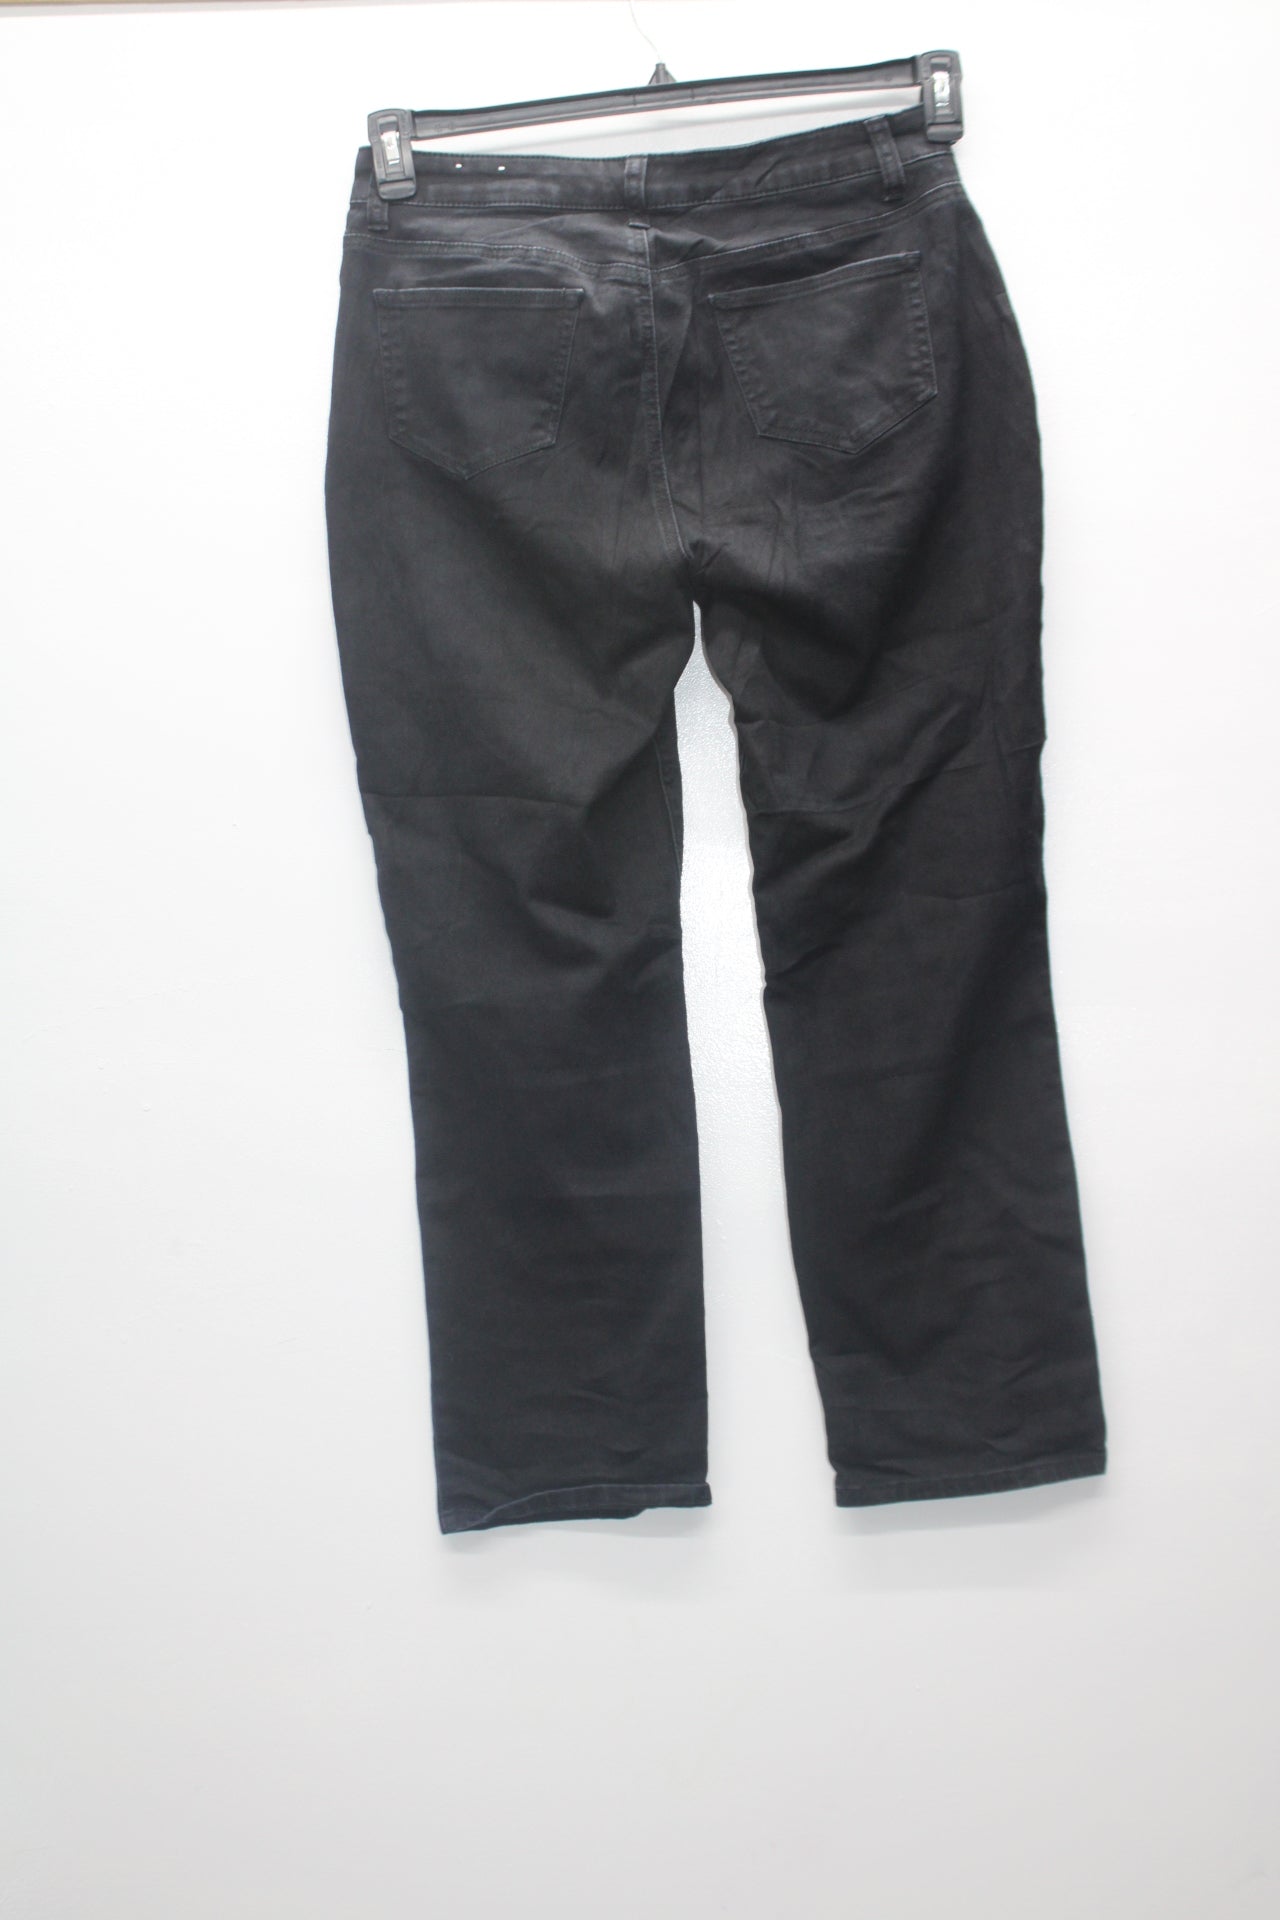 Dressbarn Women's Jeans  Black 6S Pre-Owned